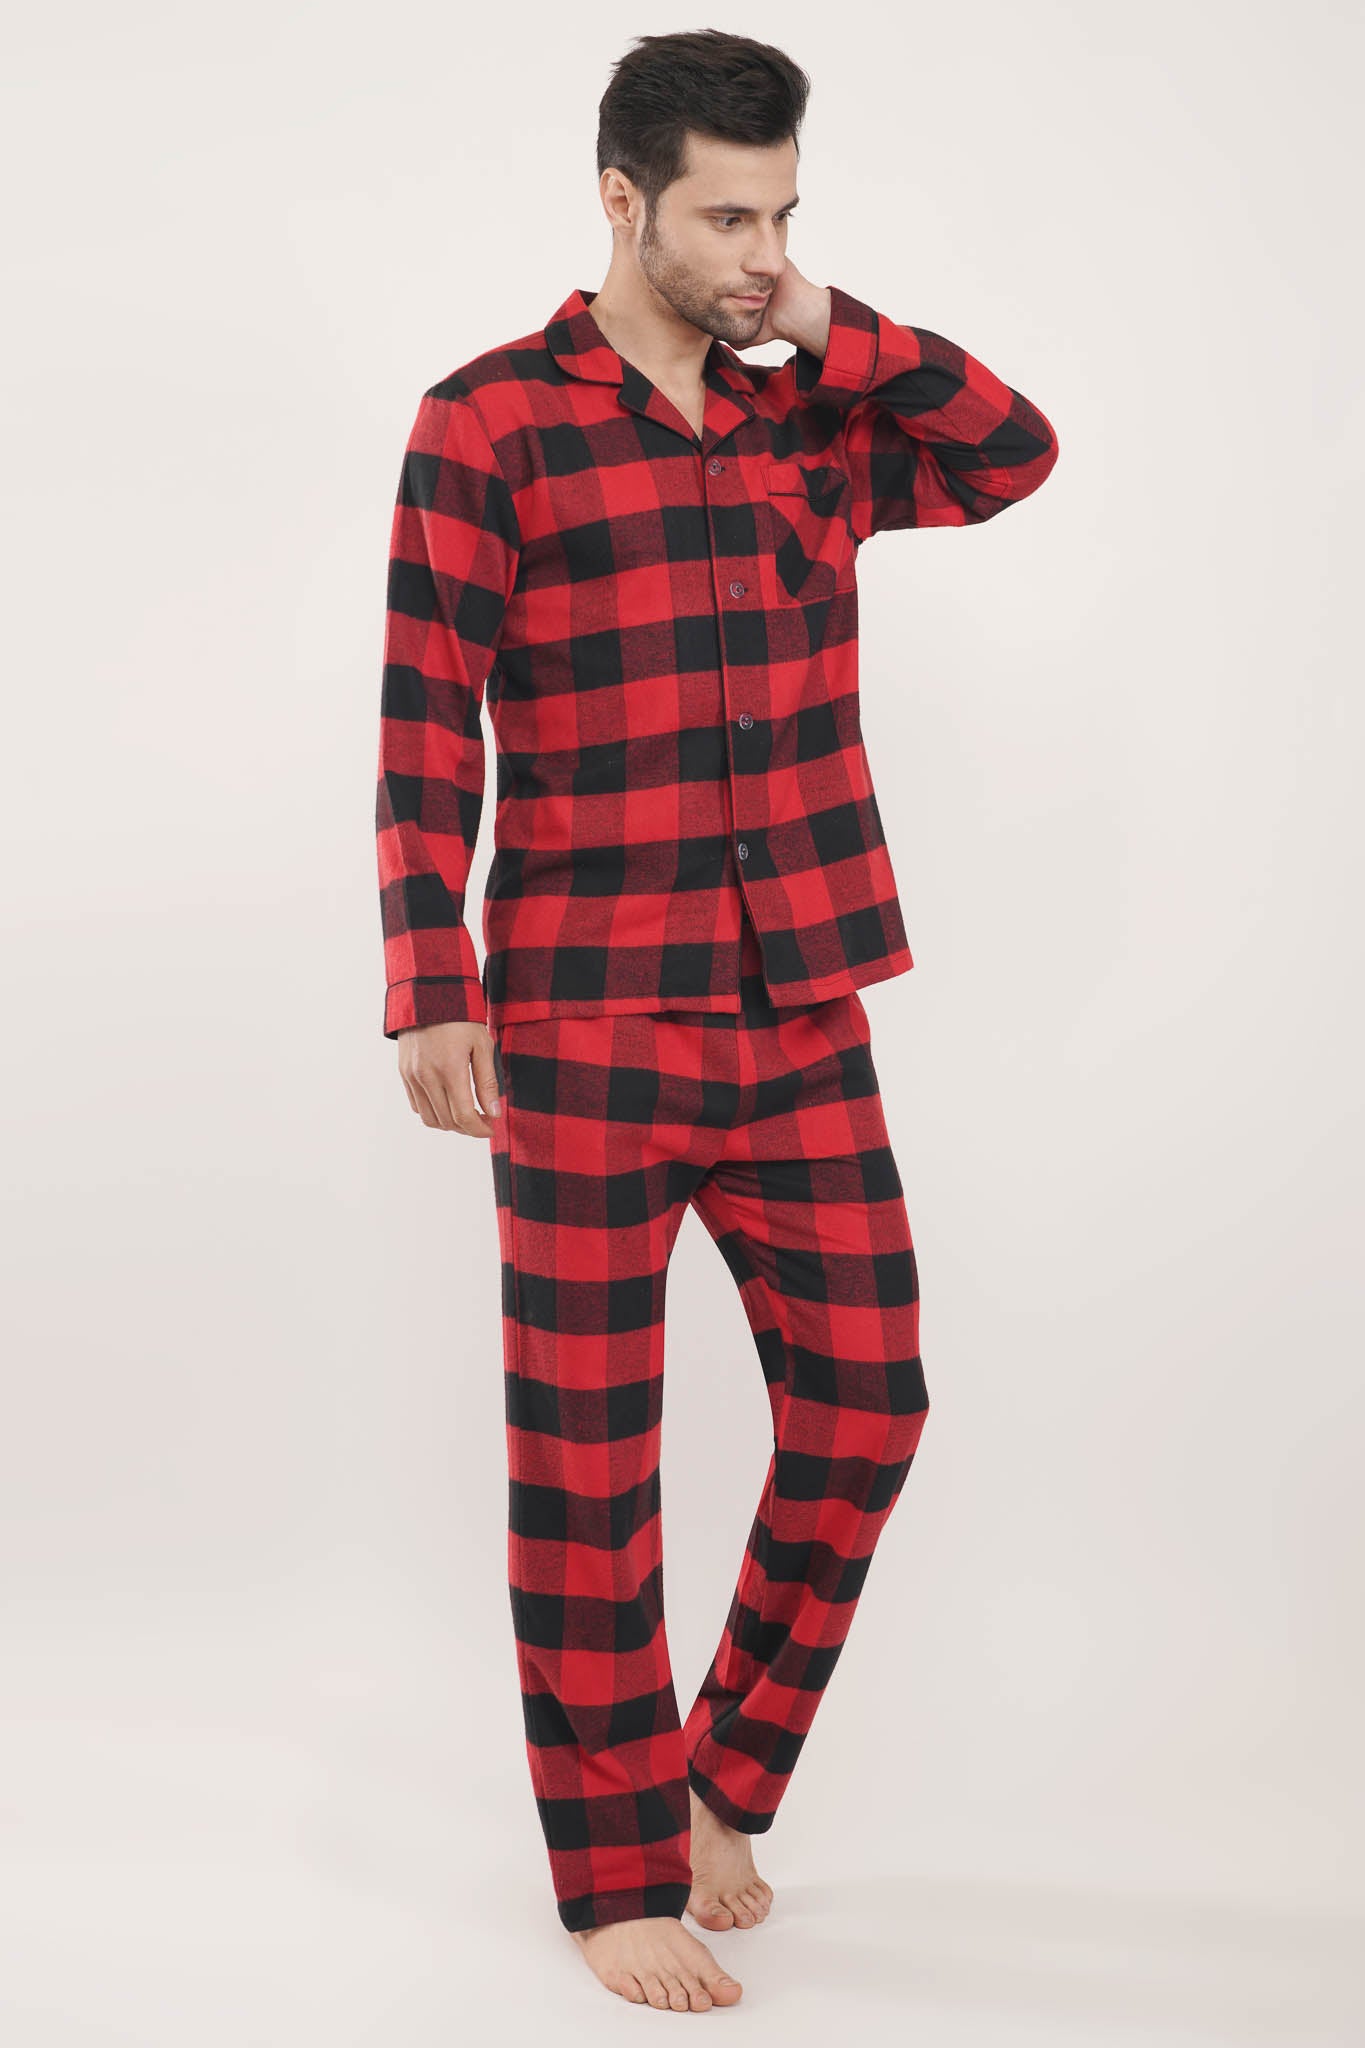 Men's & Women's Loungewear Sets: Comfy Red Tab™ Loungewear